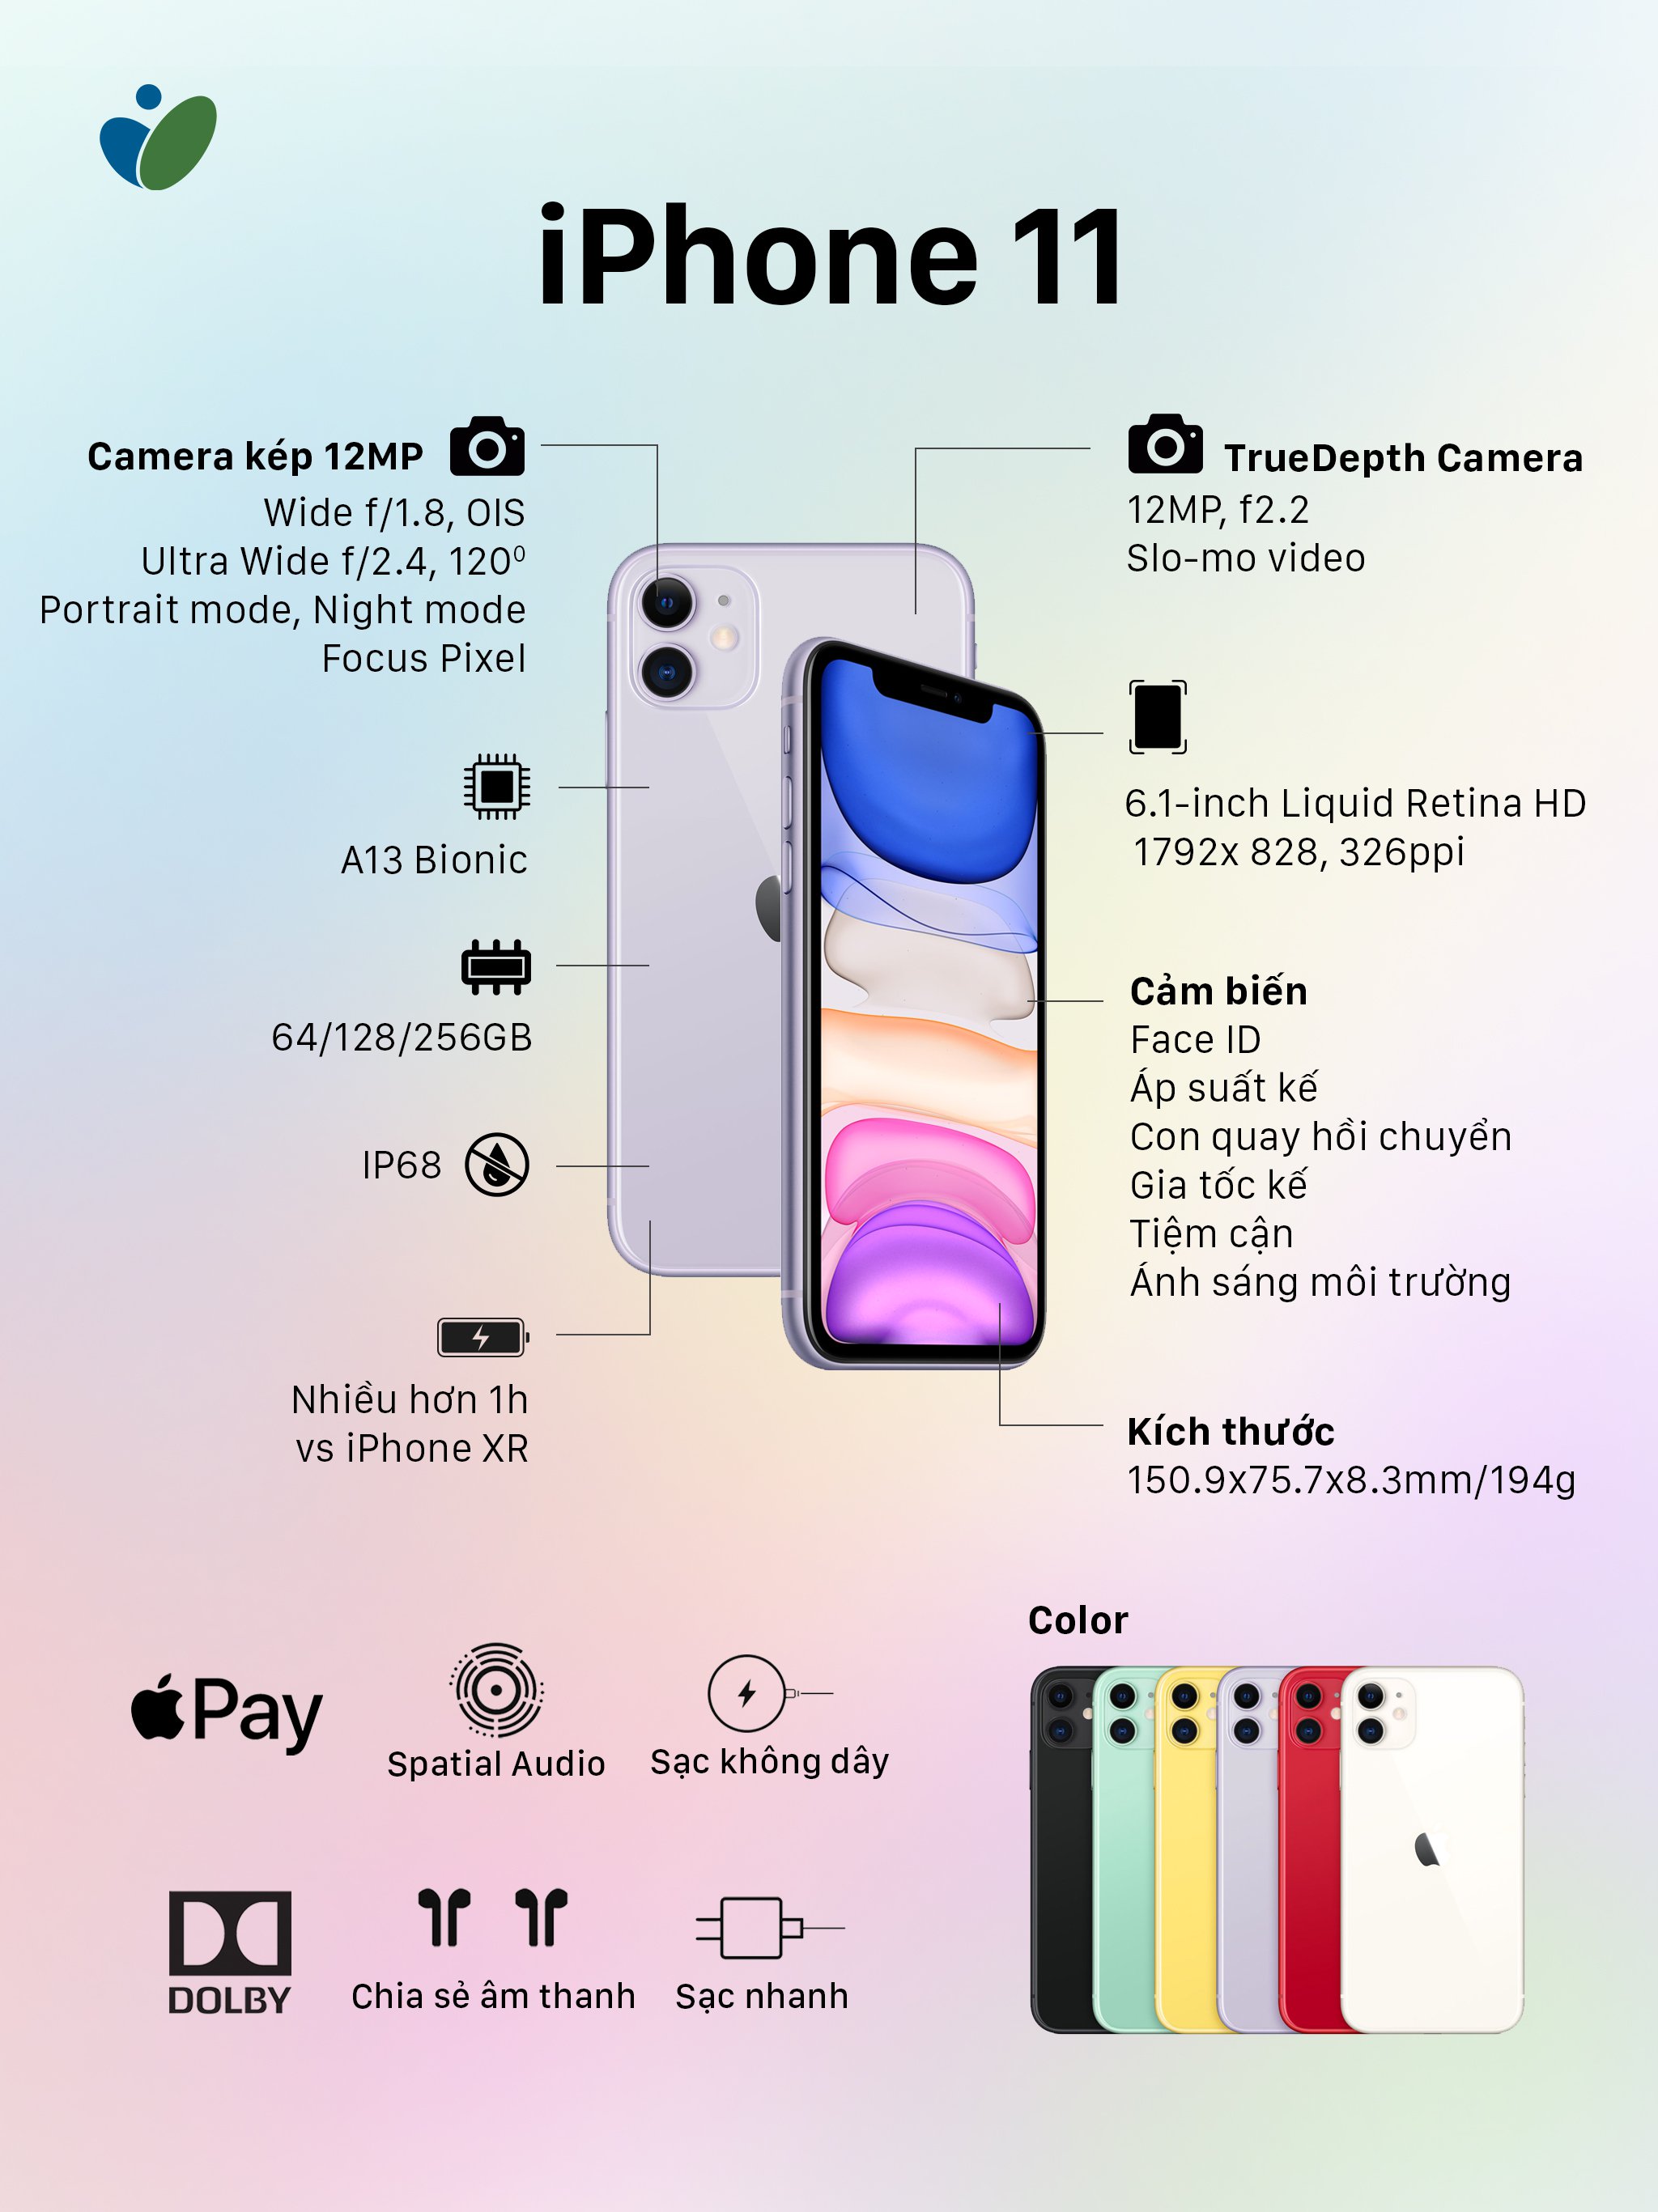 Một vài thông số kỹ thuật của iPhone 11